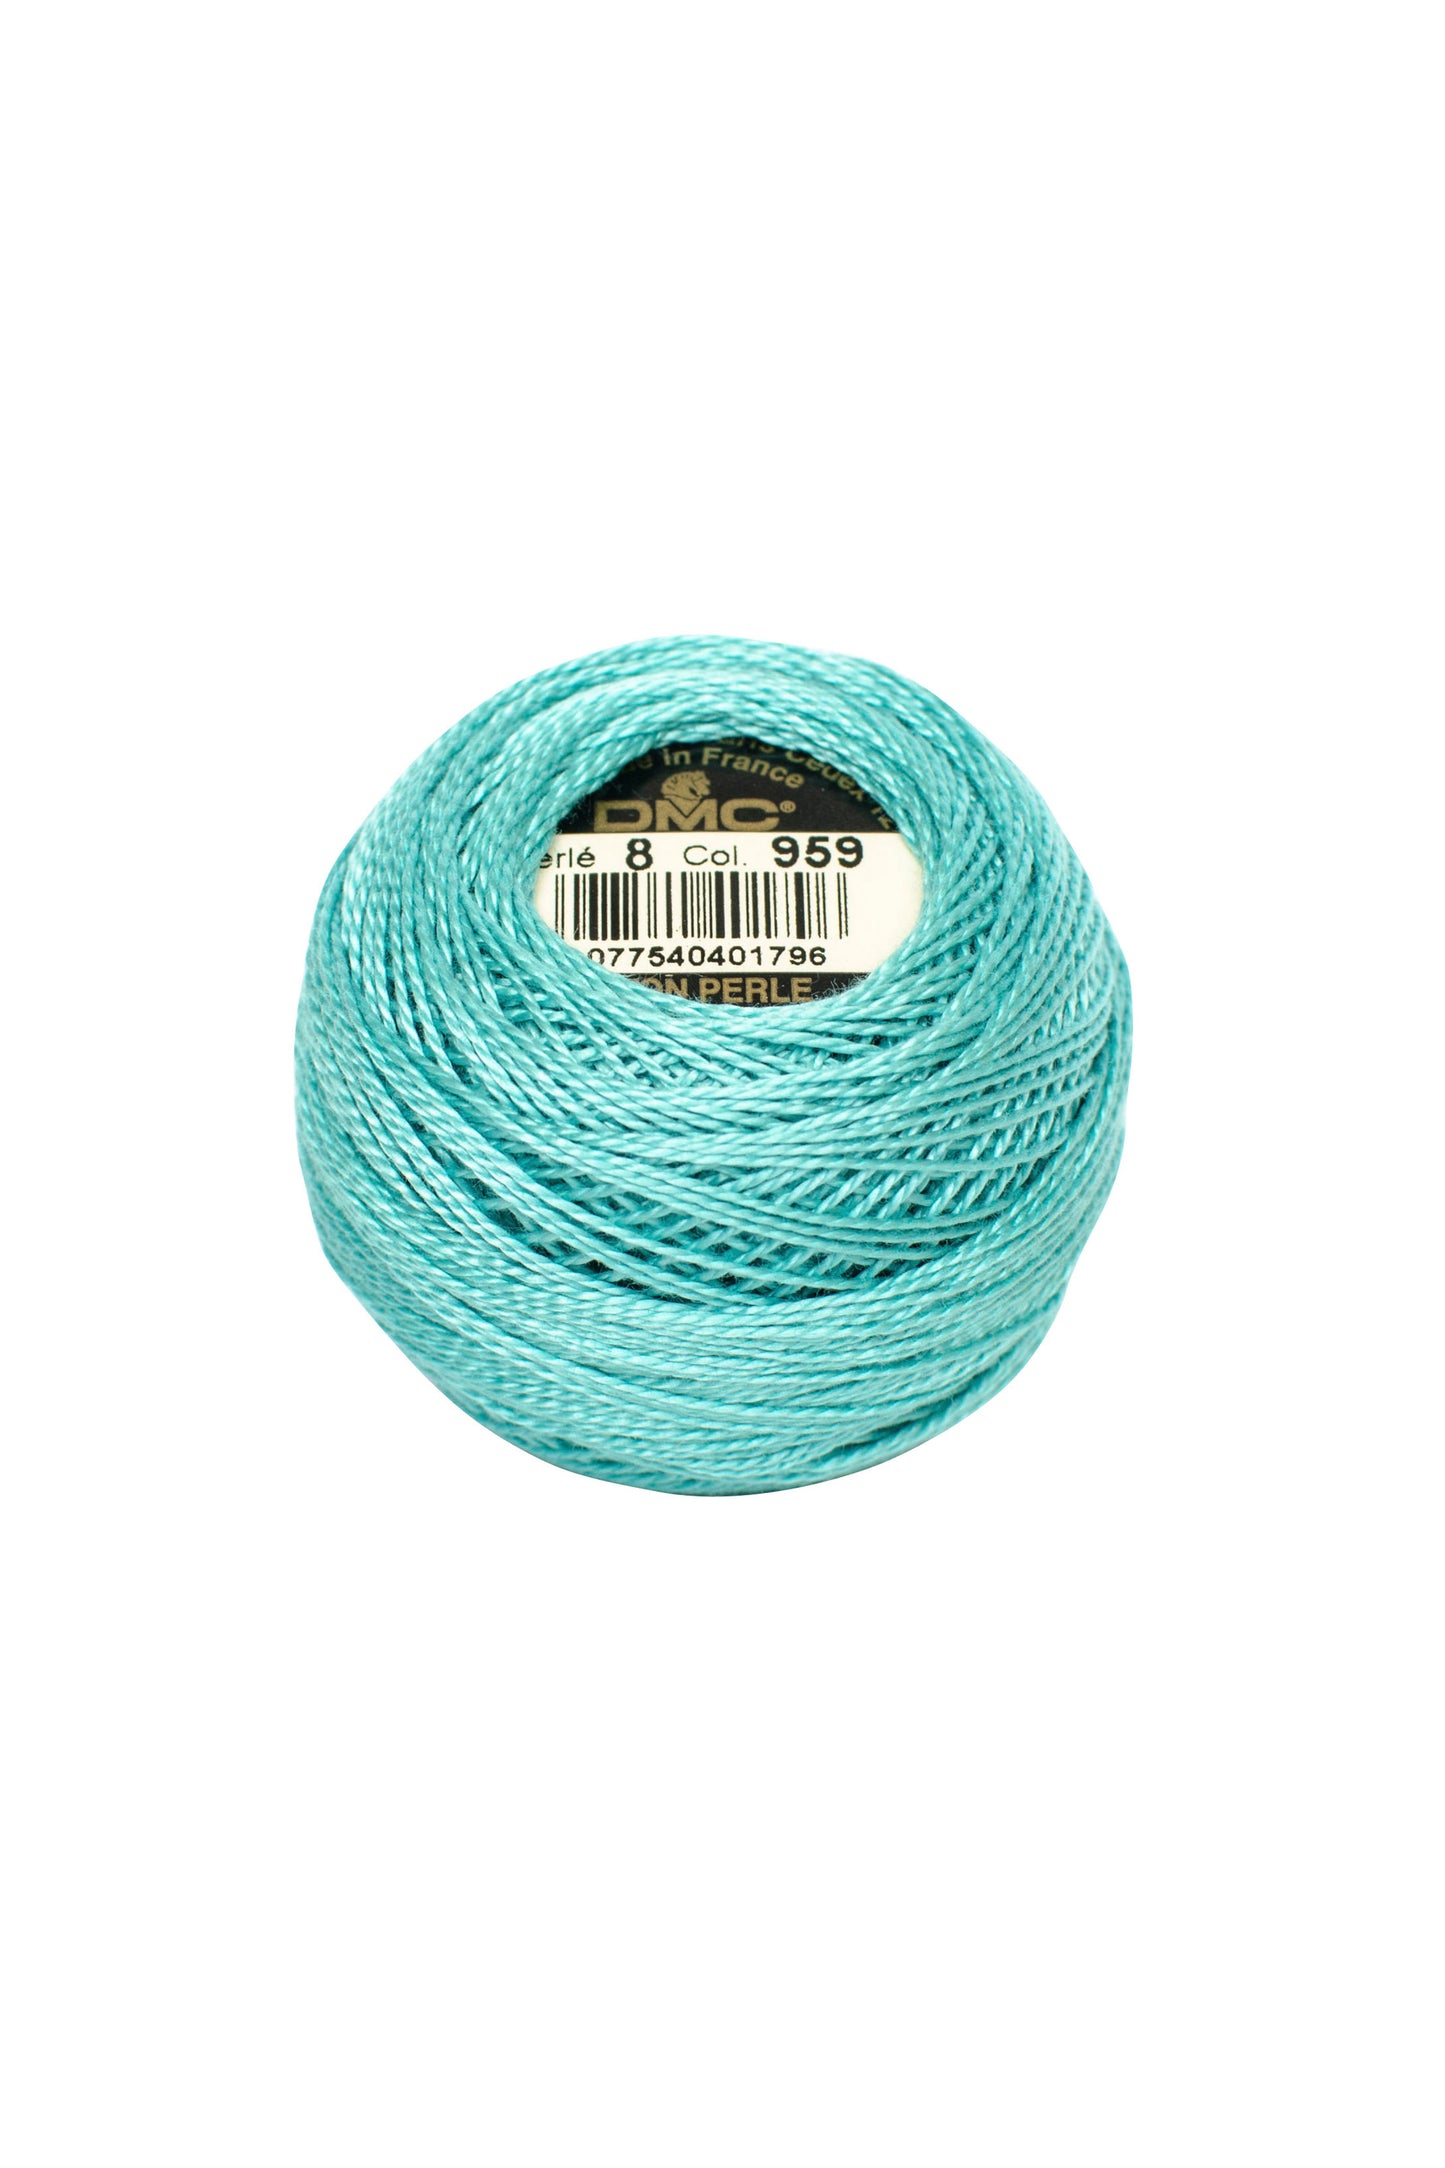 959 Medium Seagreen - DMC #8 Perle Cotton Ball